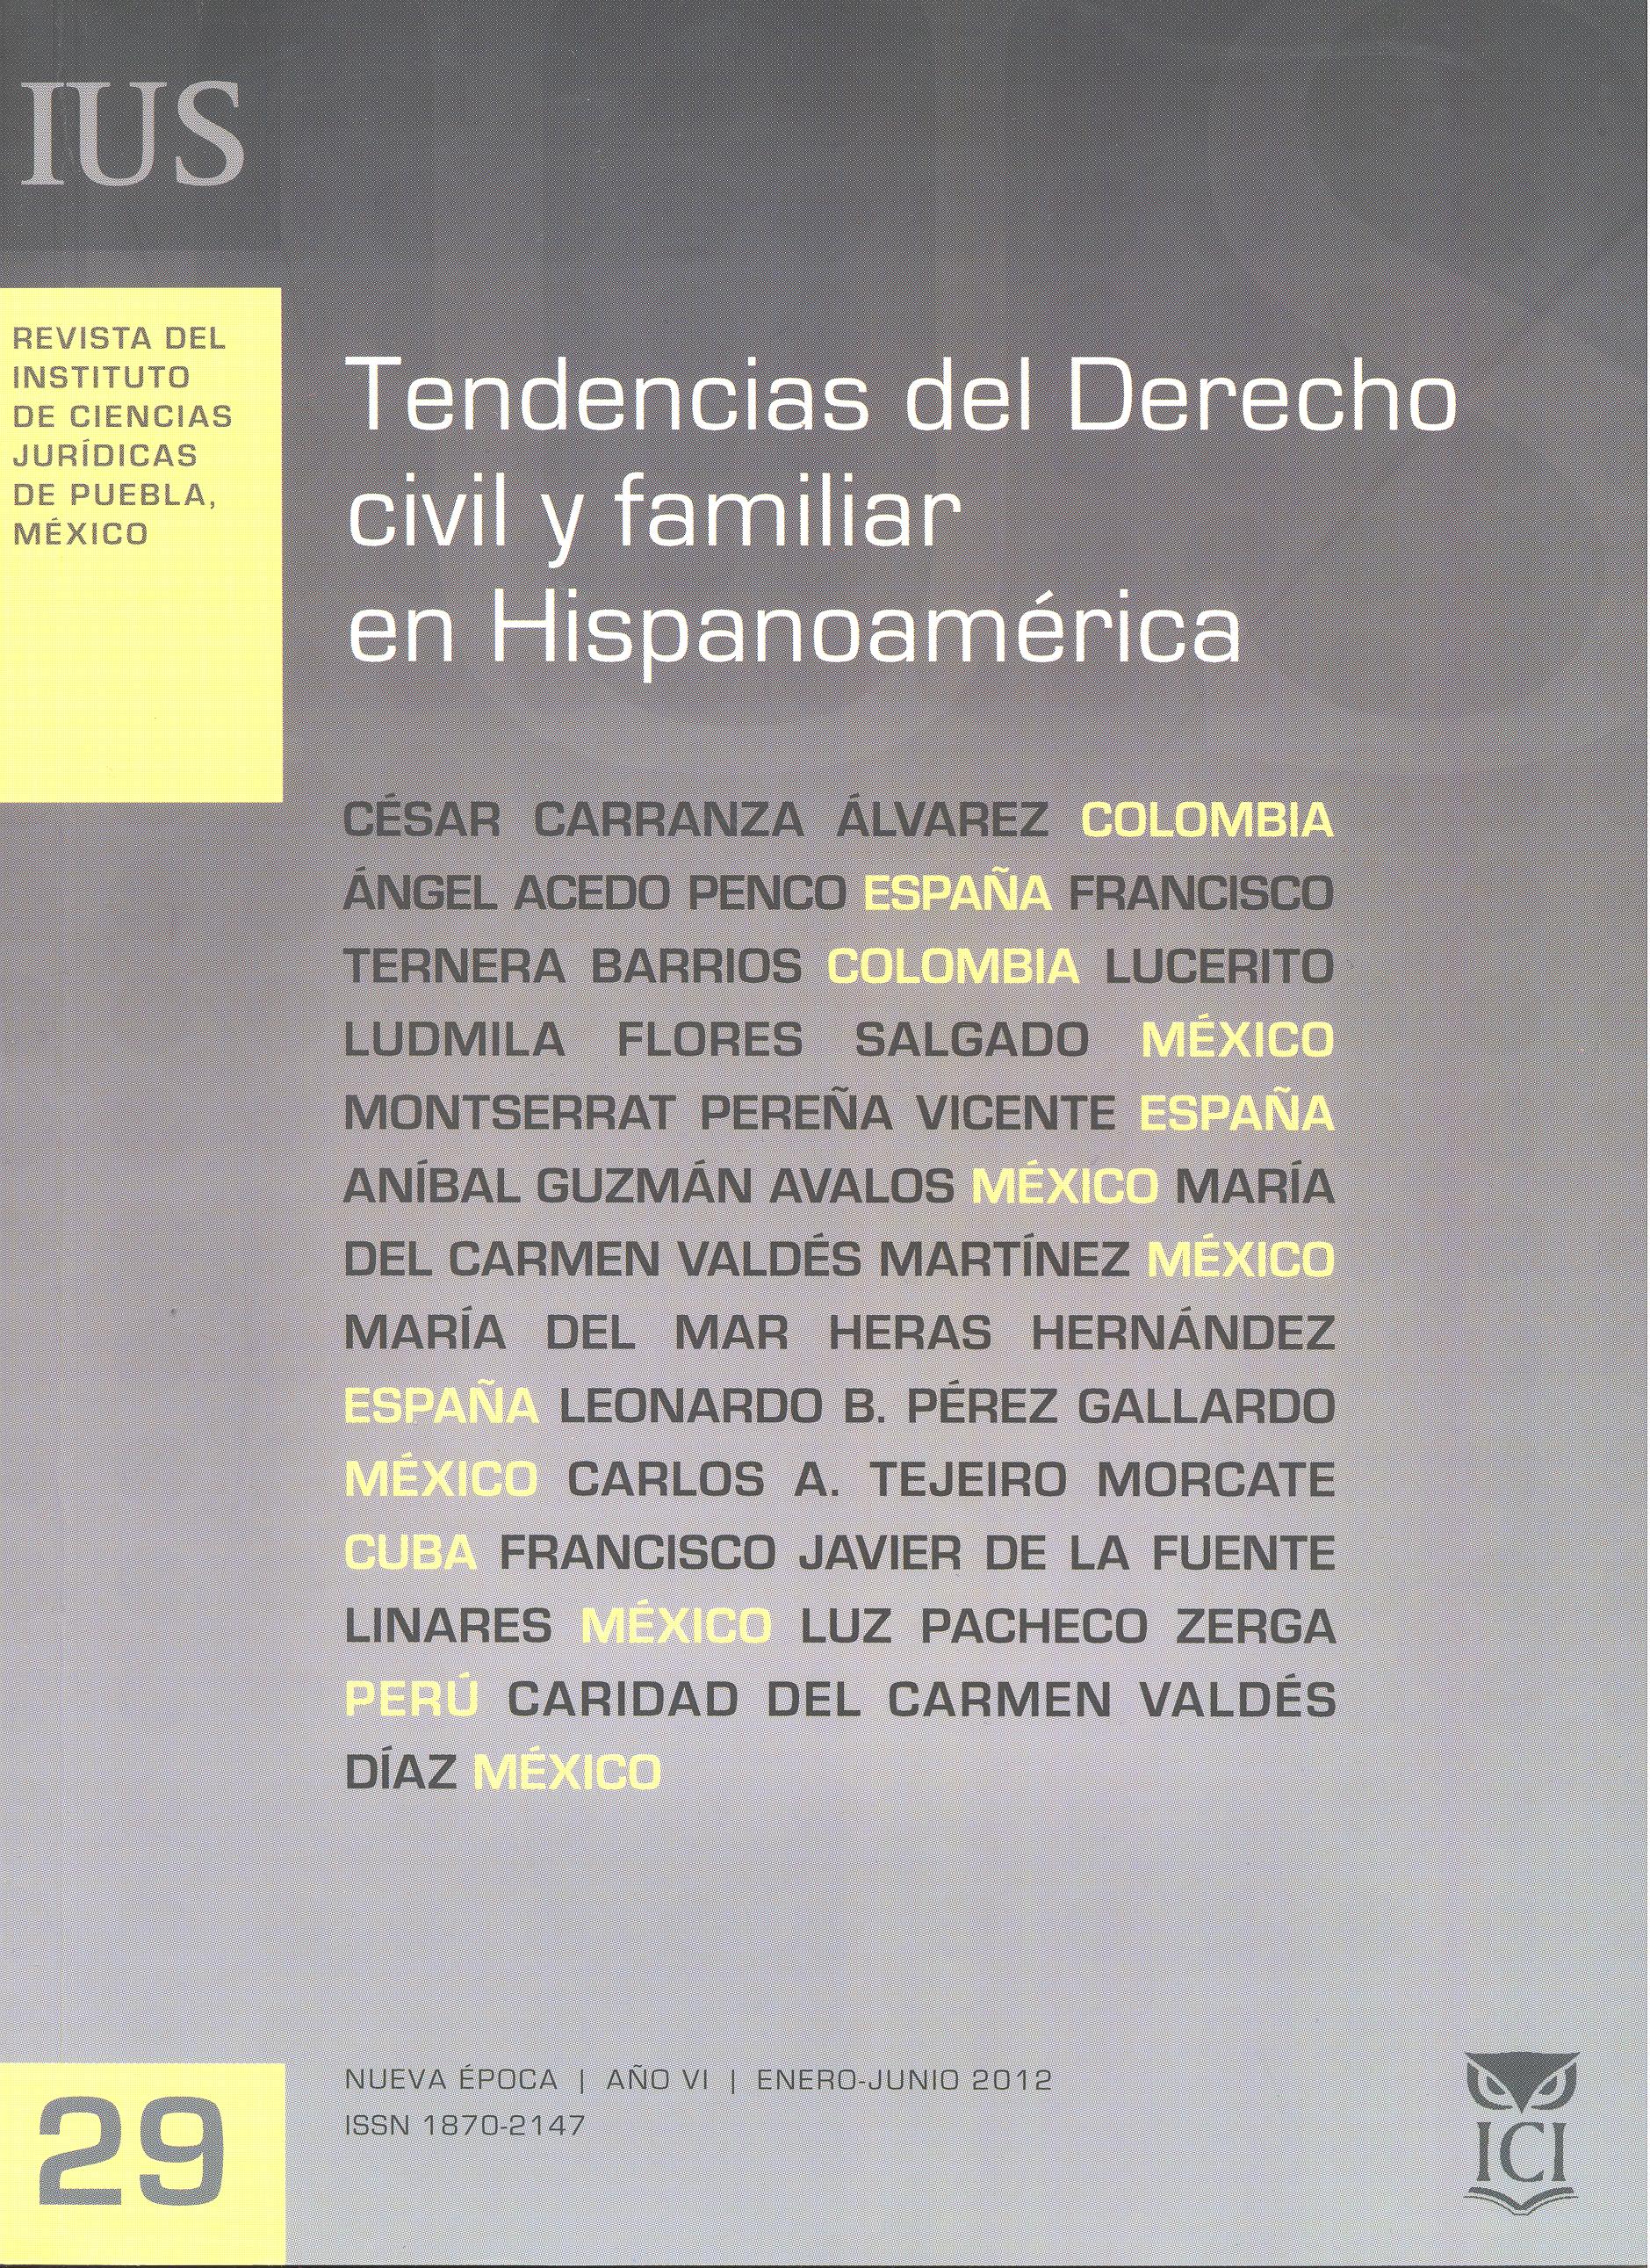 					Ver Vol. 6 Núm. 29 (2012): Tendencias del Derecho civil y familiar en Hispanoamérica
				